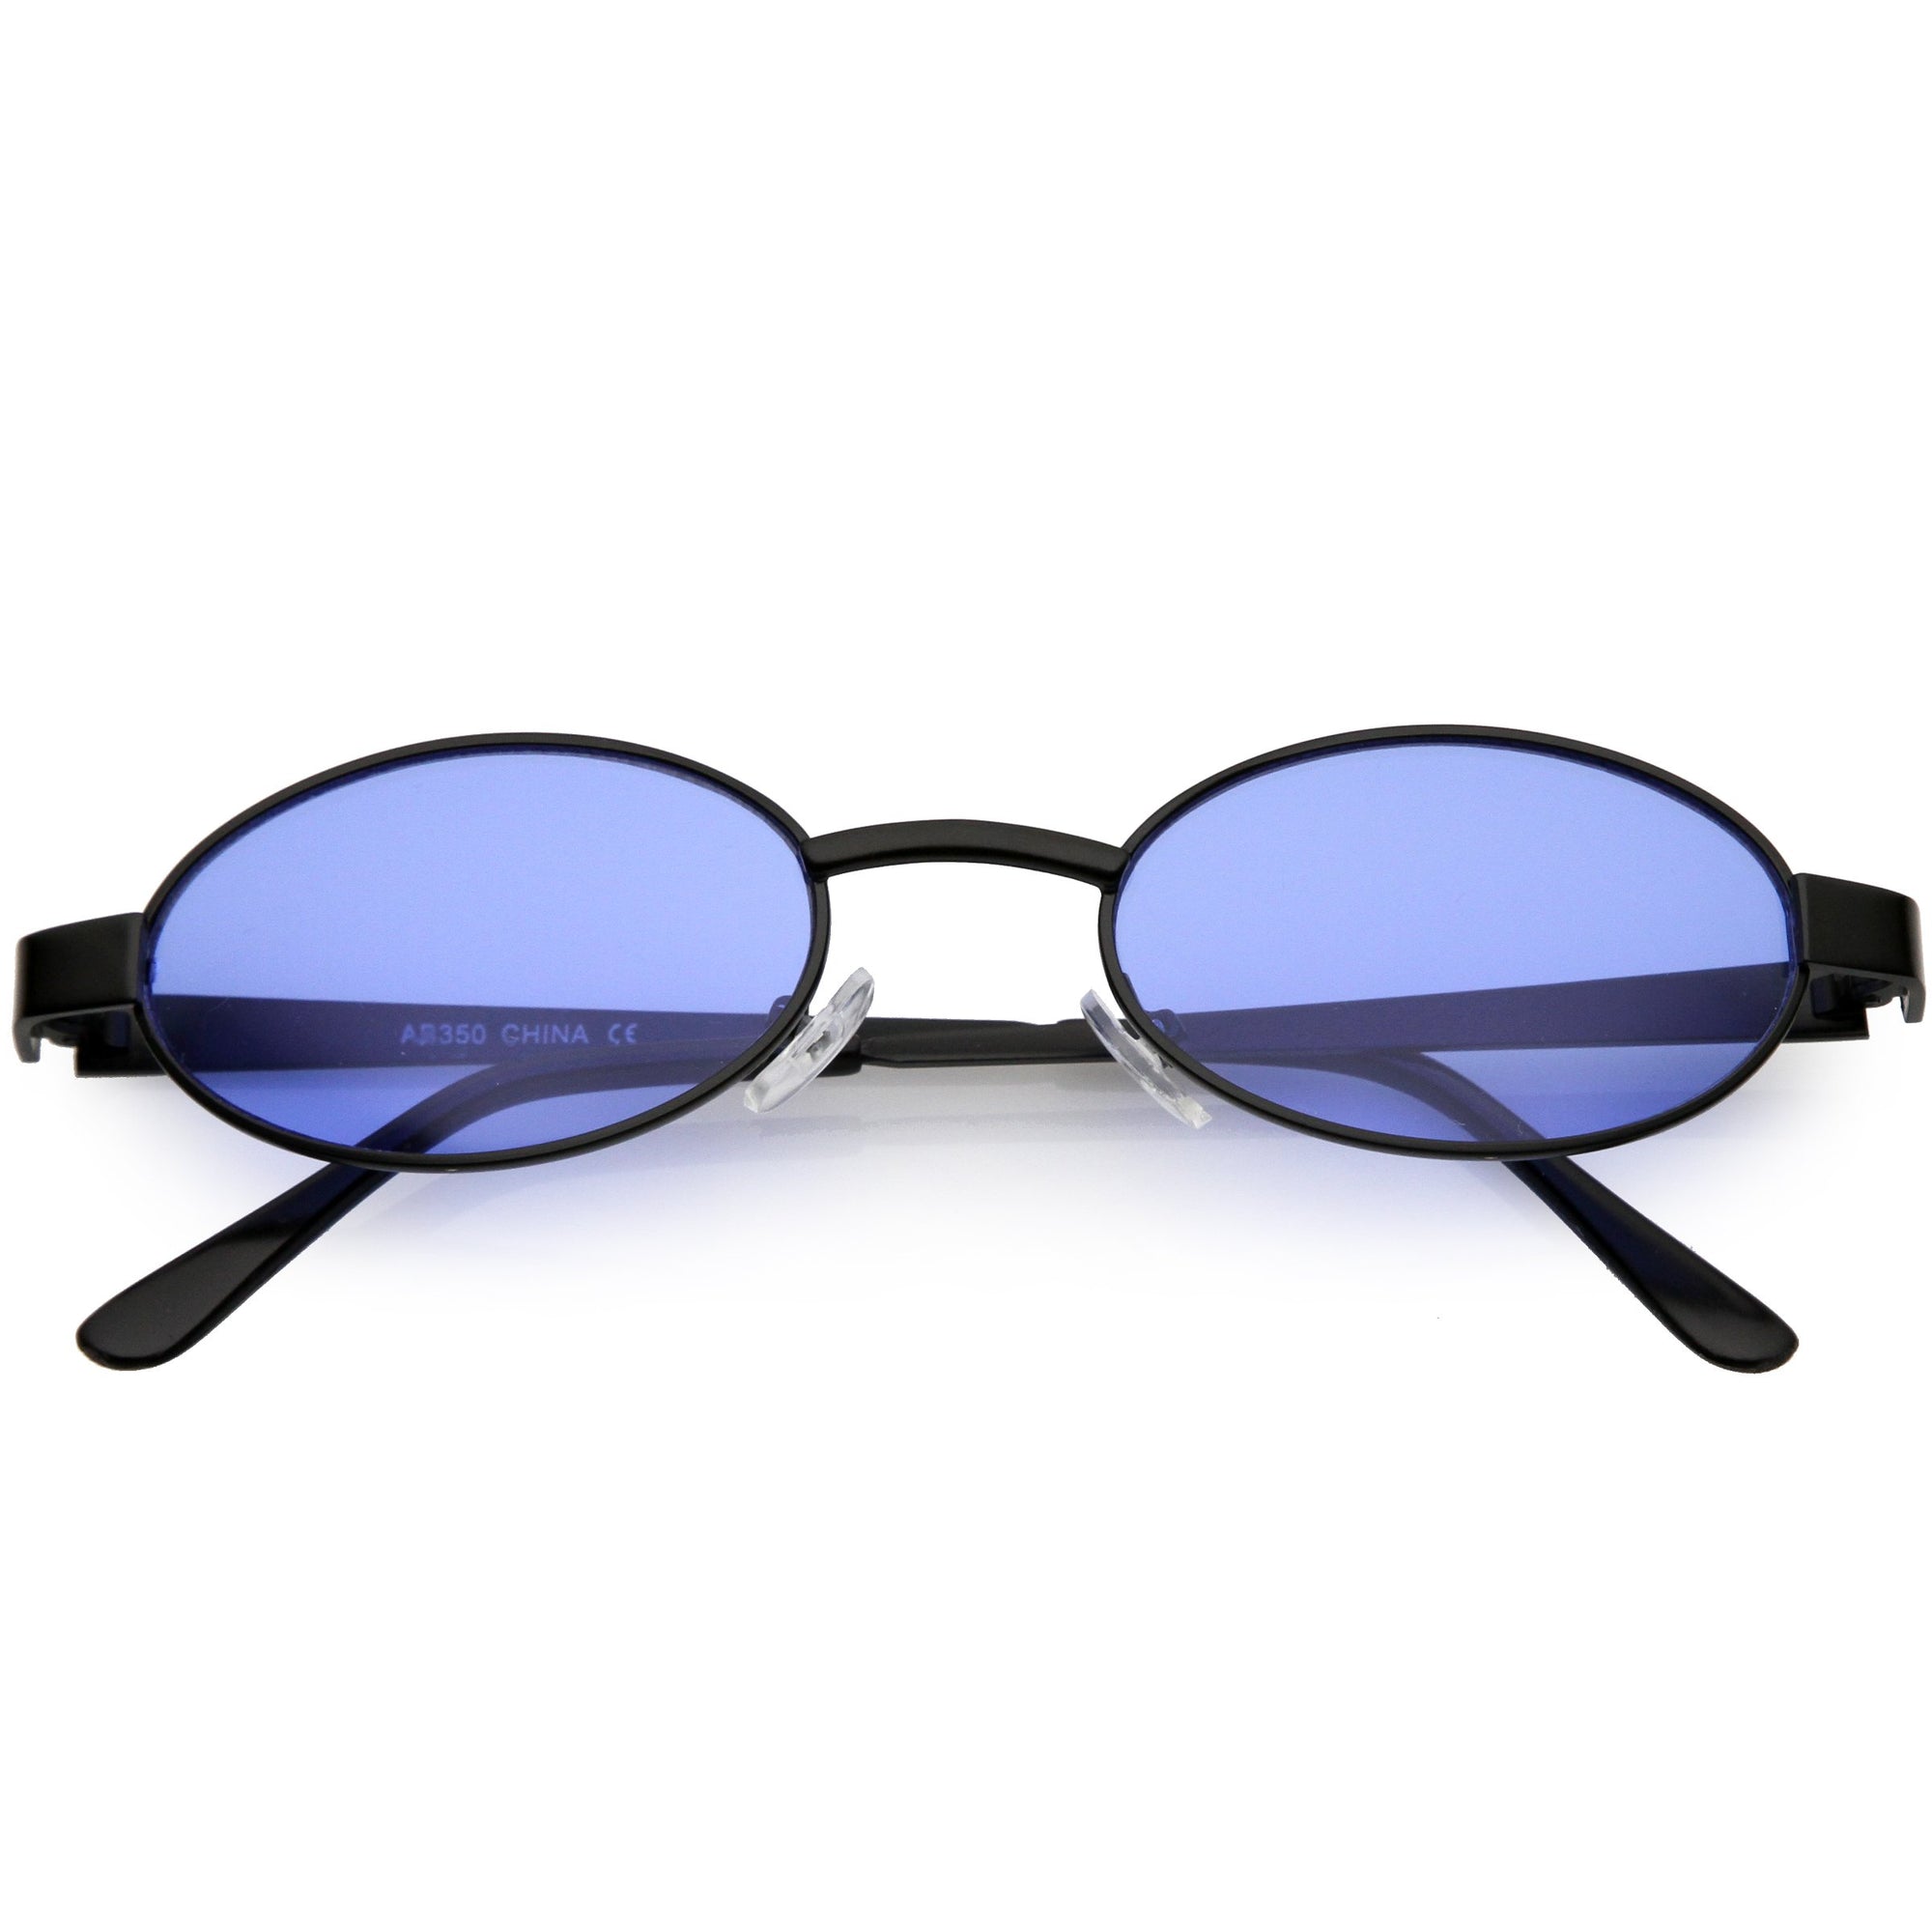 Retro 1990s Small Color Tone Oval Metal Sunglasses Zerouv 